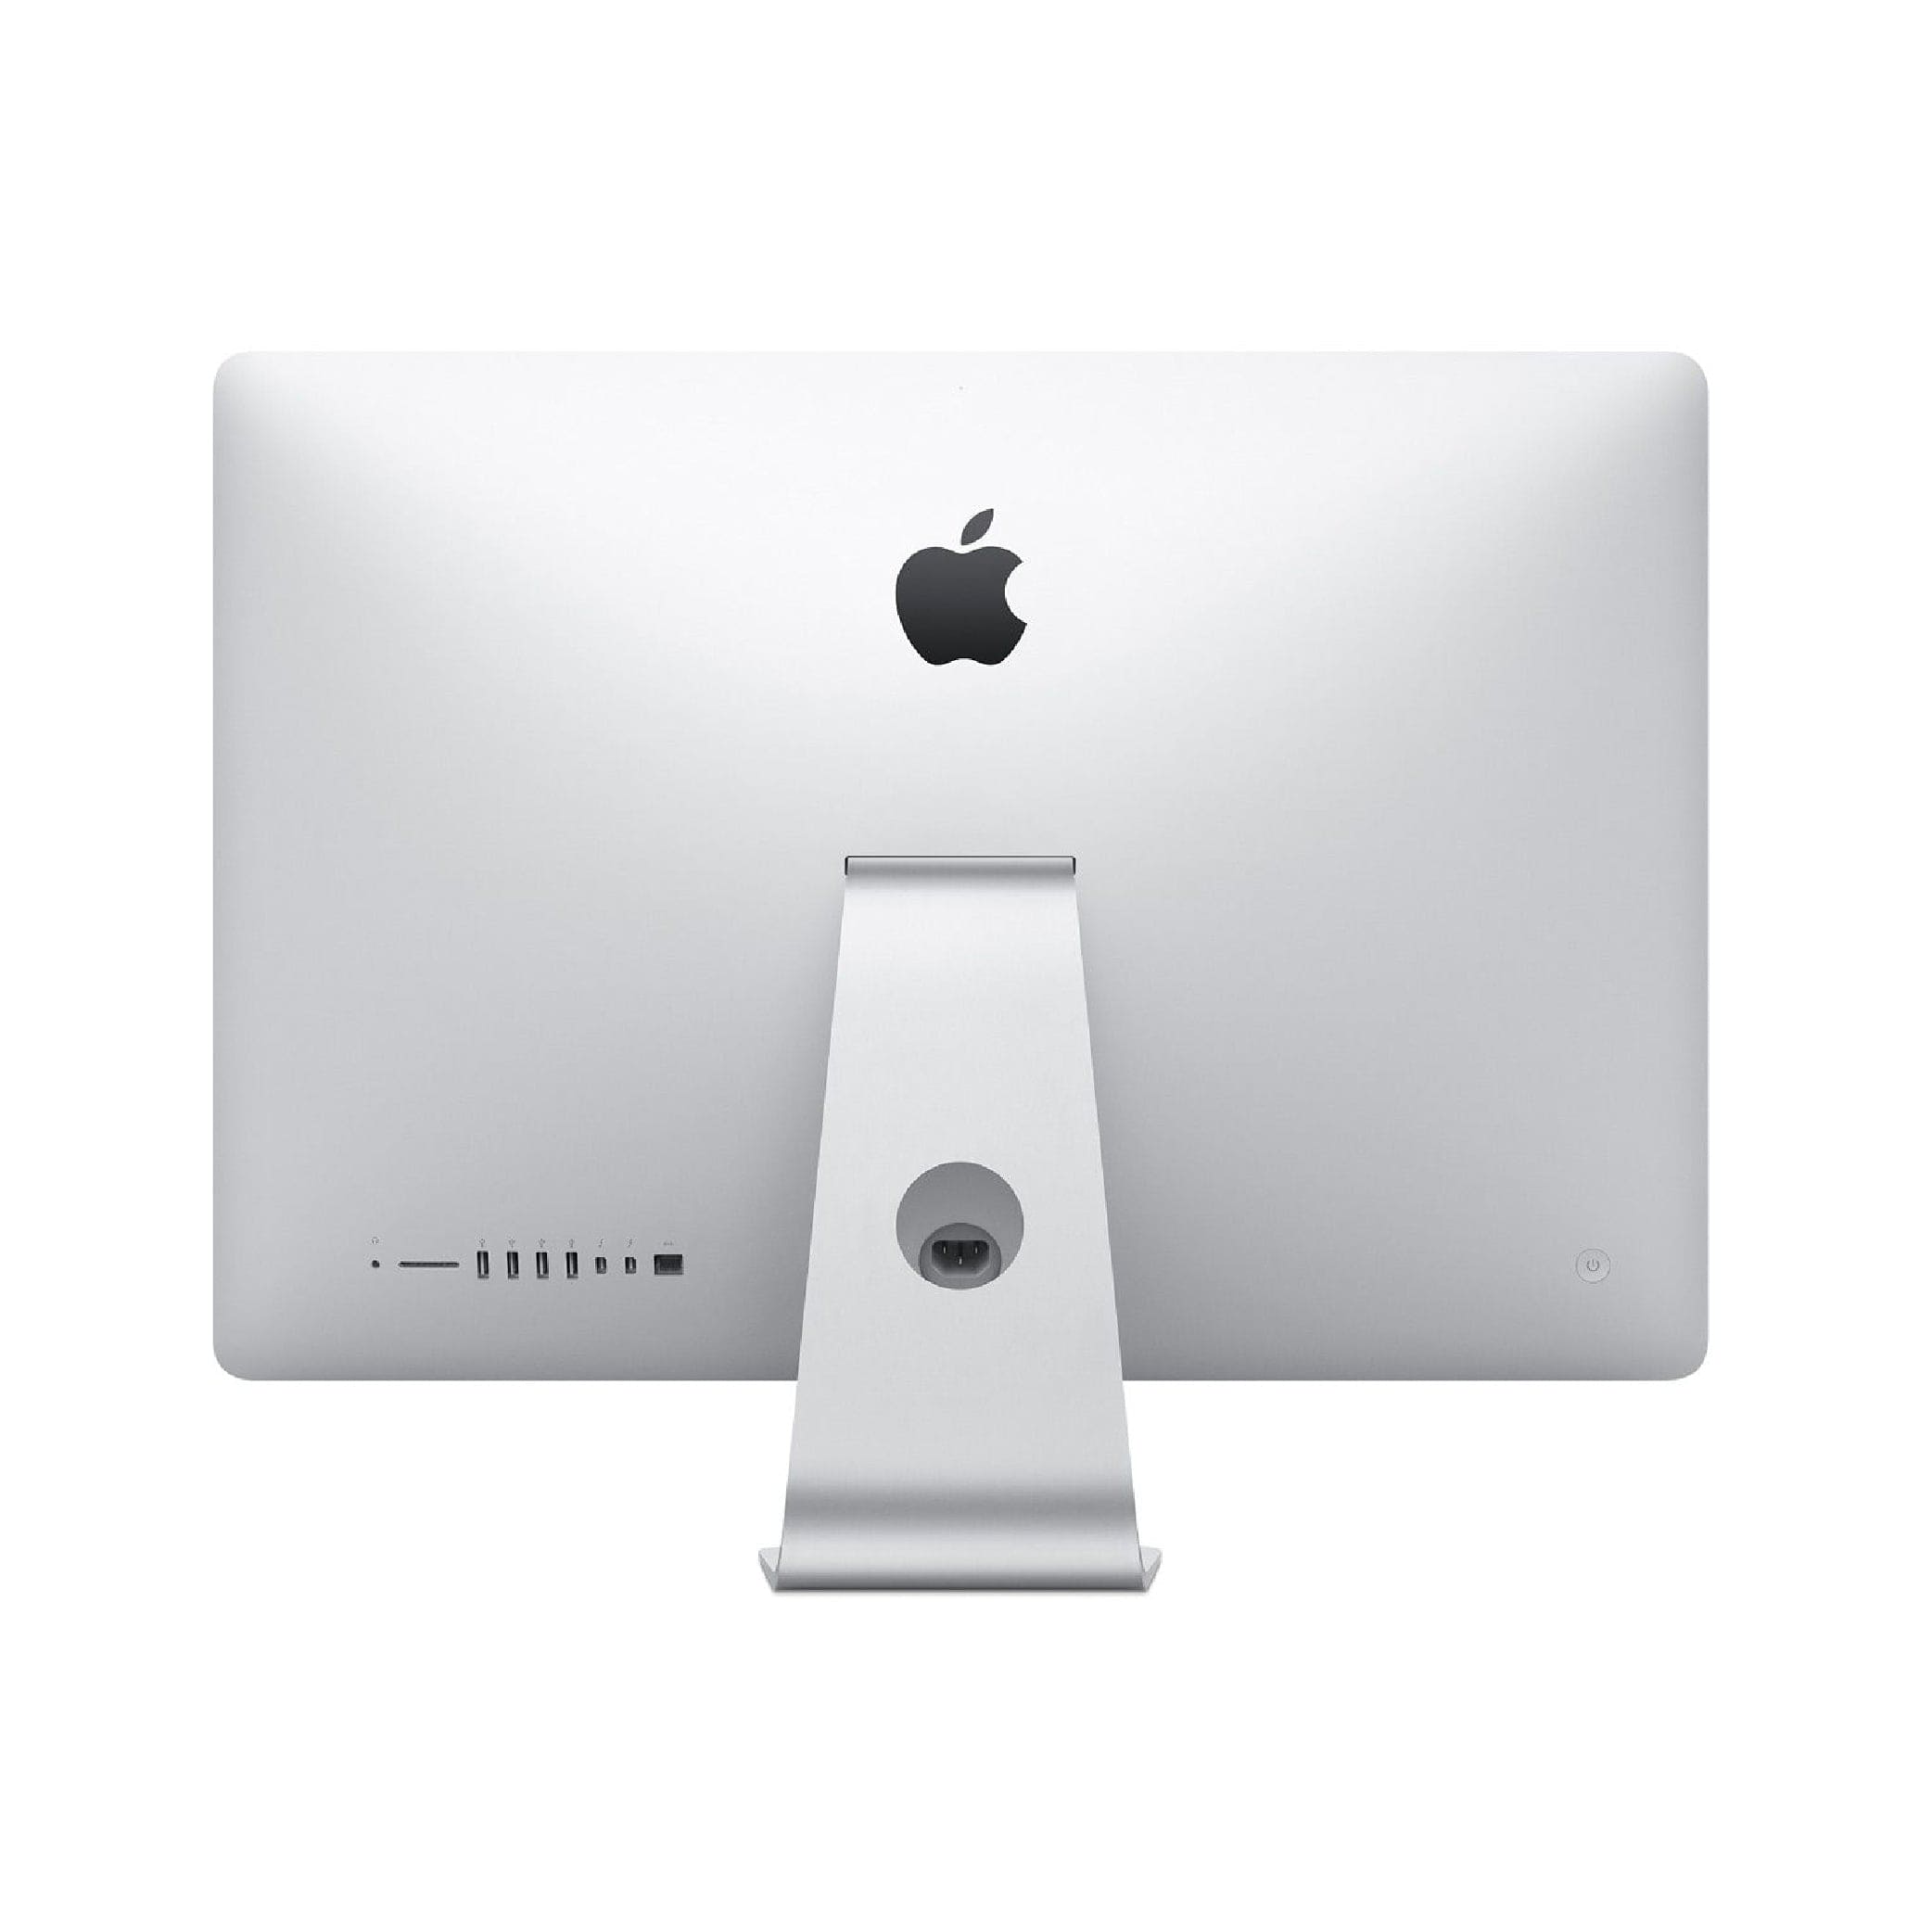 iMac 21.5-inch MK142LL/A (Late 2015) Core i5 1.6GHz - HDD 1 TB - 8GB